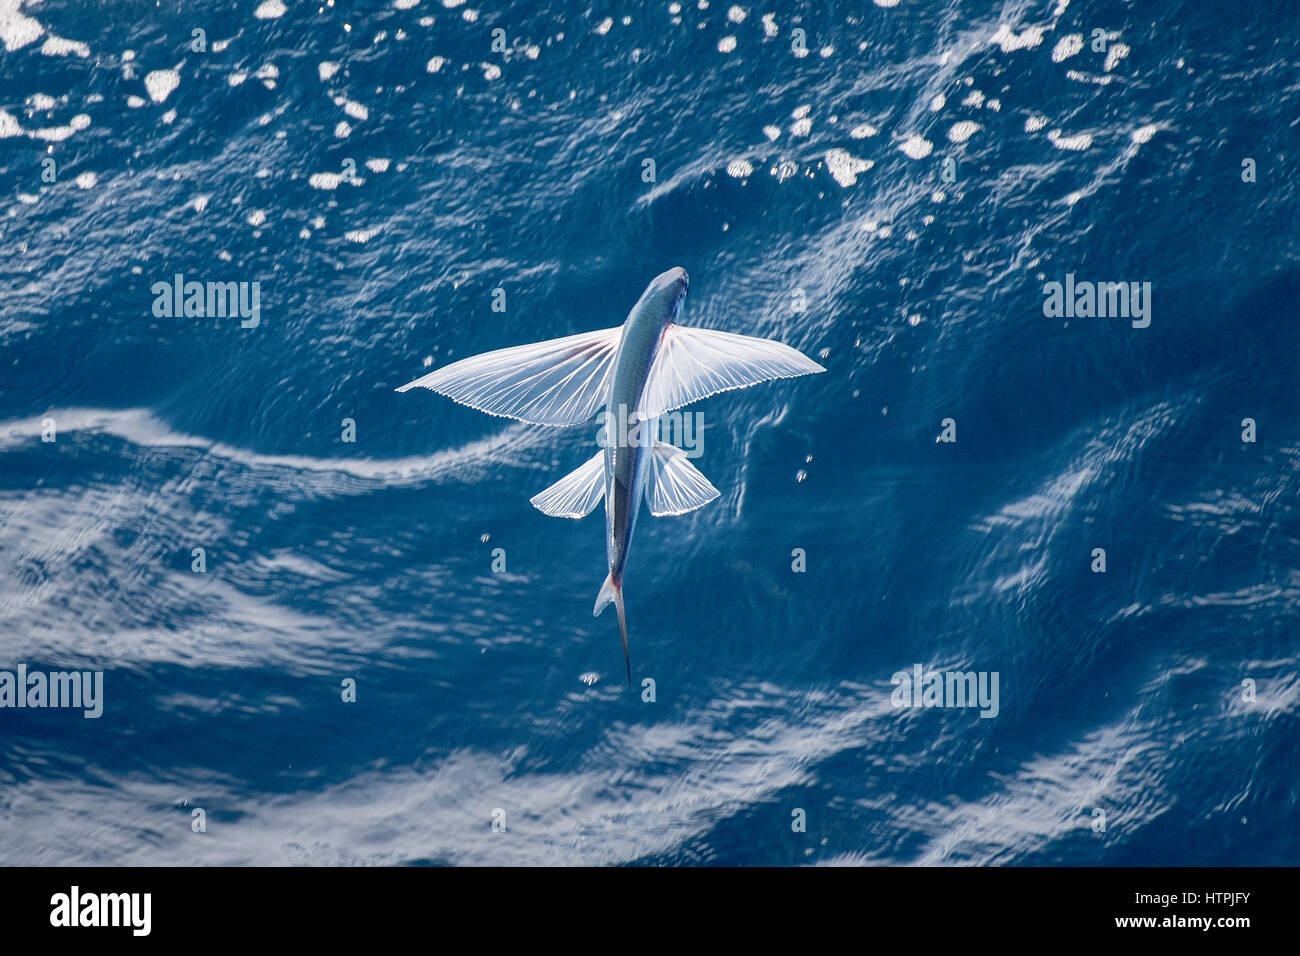 Fliegende Fische-Arten in der Luft, wissenschaftlicher Name unbekannt, abseits mehrere hundert Meilen Mauretanien, Nord-Afrika, Atlantik. Stockfoto